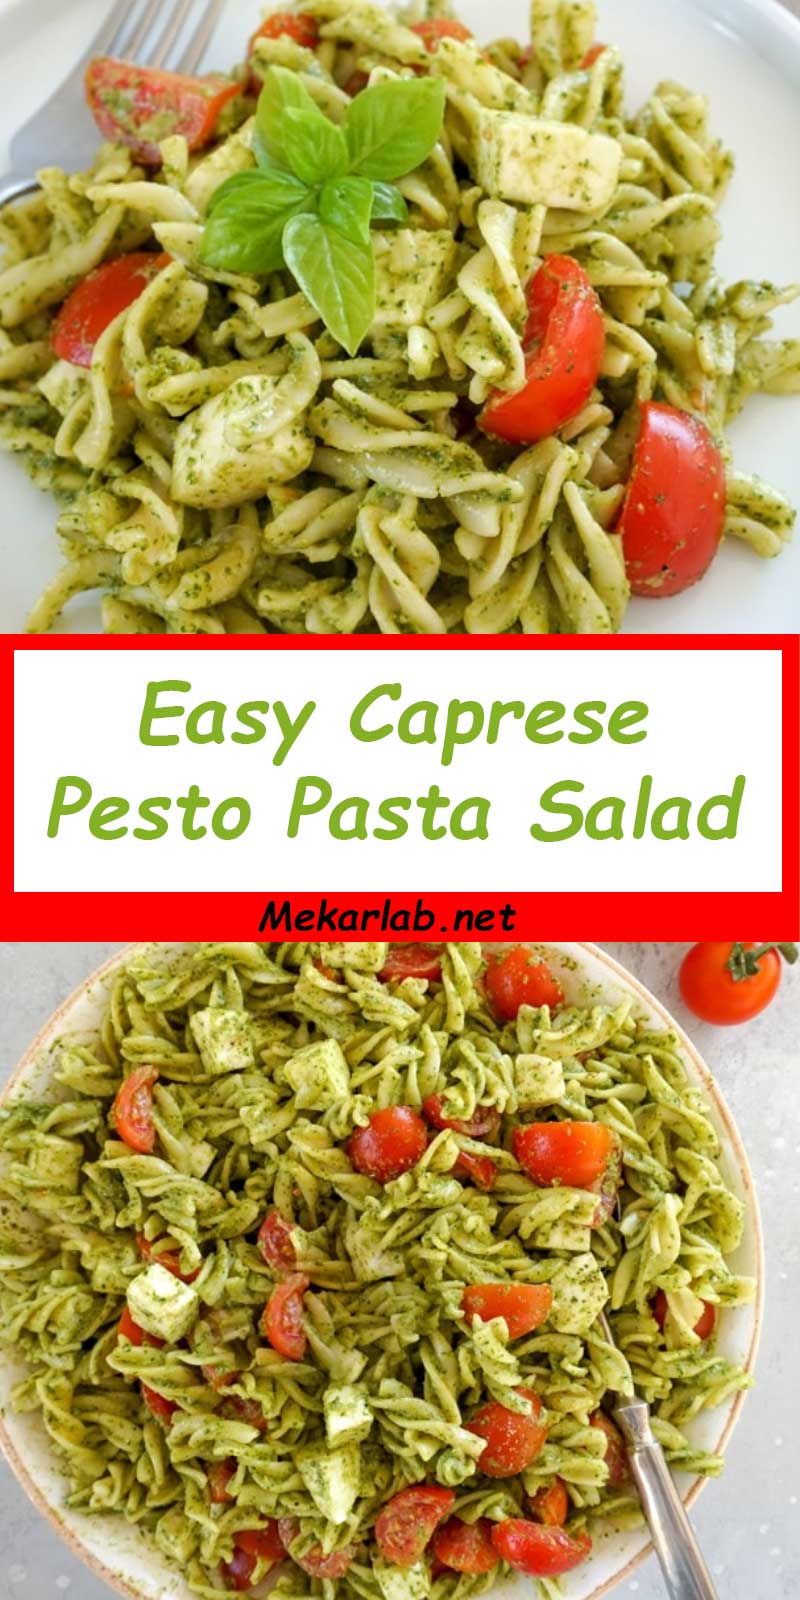 Easy Caprese Pesto Pasta Salad